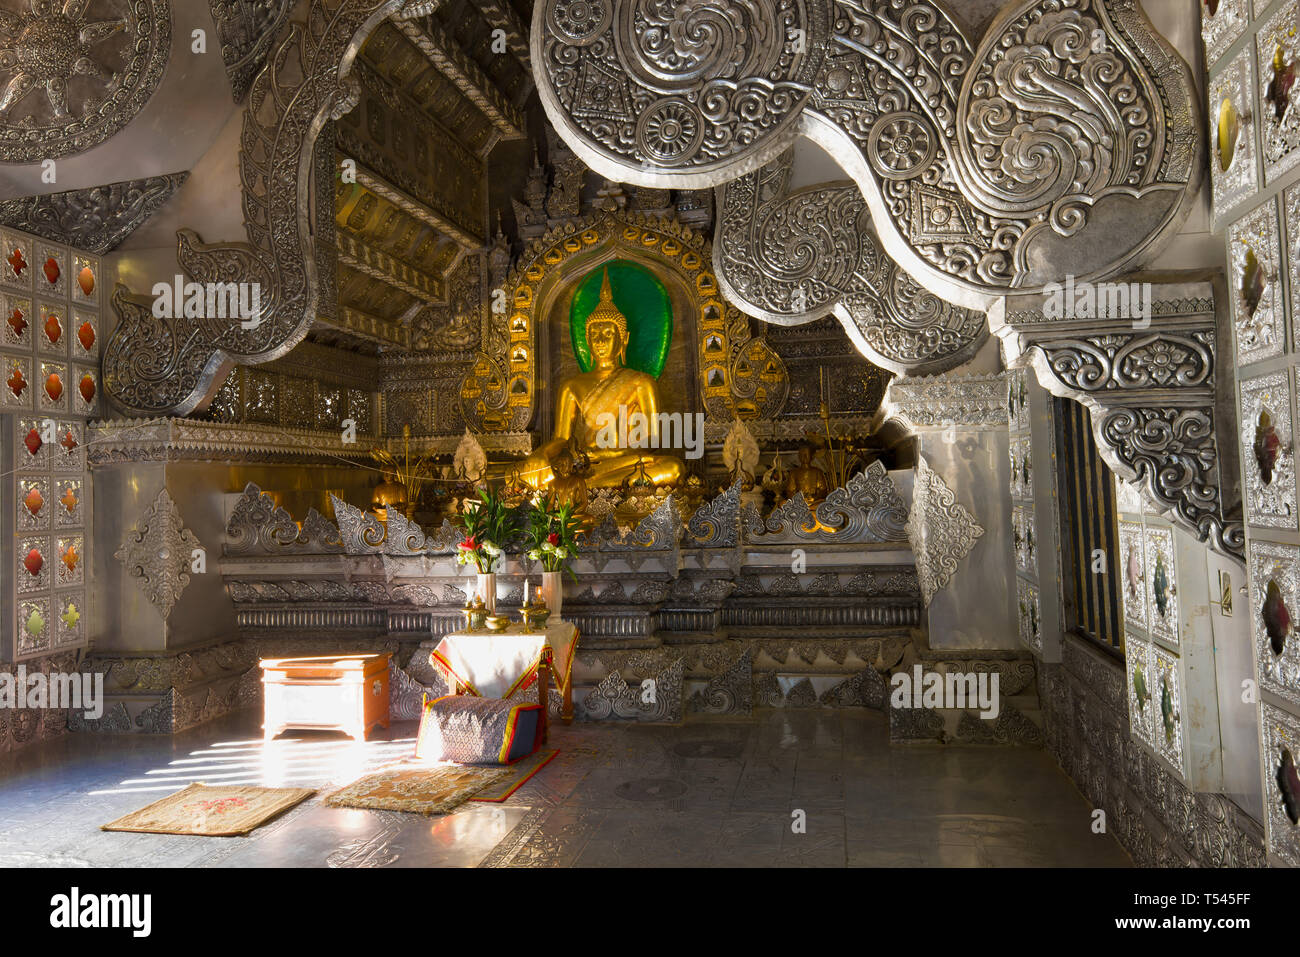 CHIANG MAI, THAÏLANDE - le 22 décembre 2018 : le Bouddha d'or dans l'intérieur de l'argent (temple Wat Sri Suphan) Banque D'Images